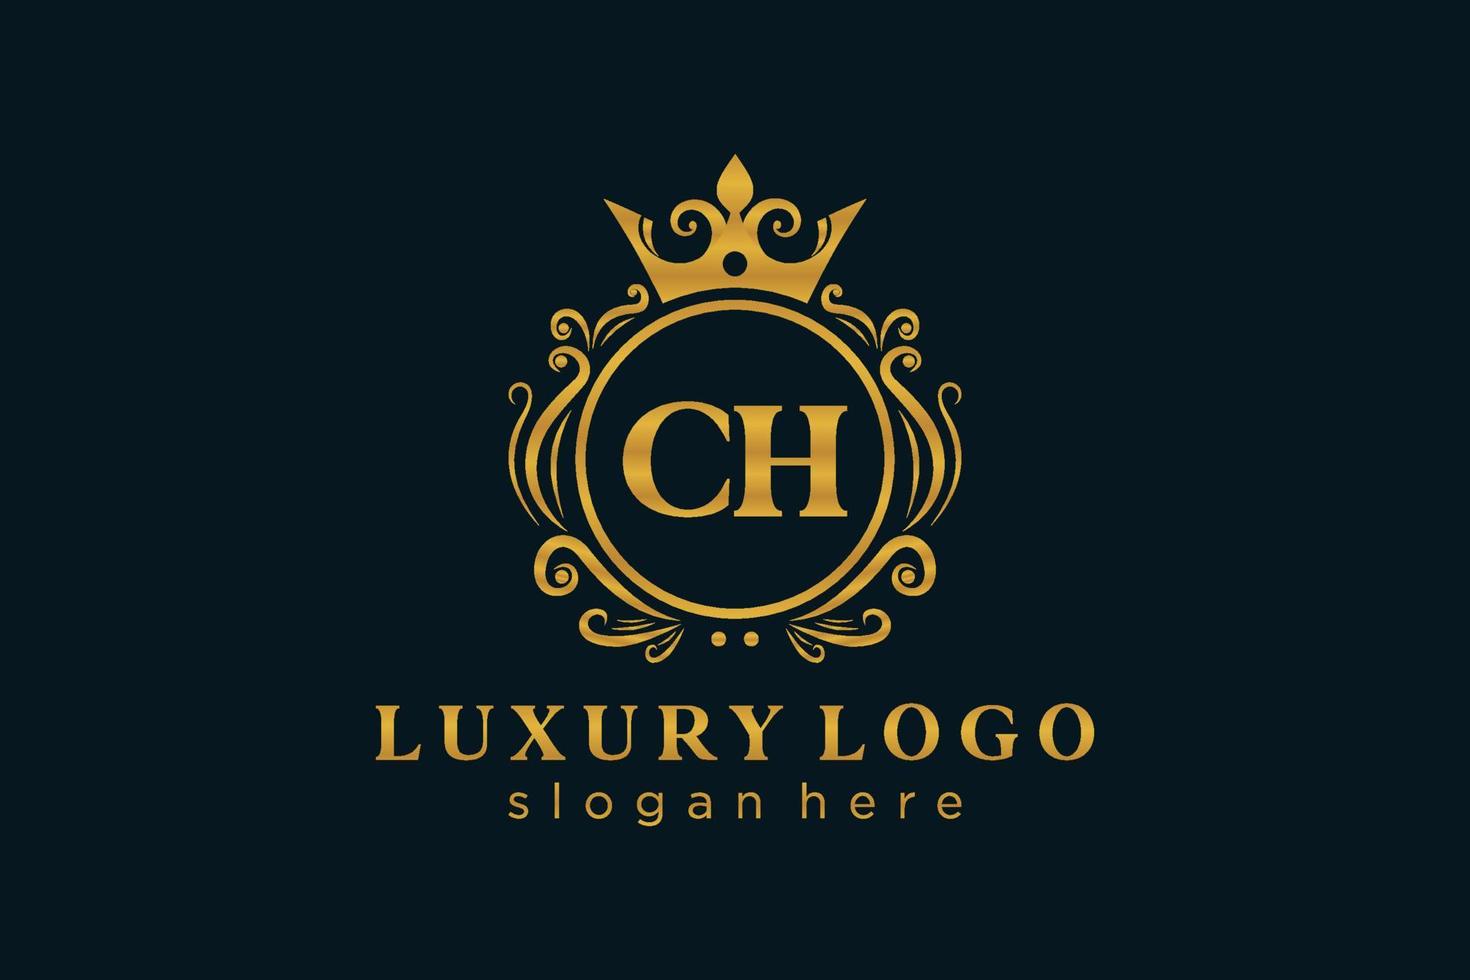 Royal Luxury Logo-Vorlage mit anfänglichem ch-Buchstaben in Vektorgrafiken für Restaurant, Lizenzgebühren, Boutique, Café, Hotel, Heraldik, Schmuck, Mode und andere Vektorillustrationen. vektor